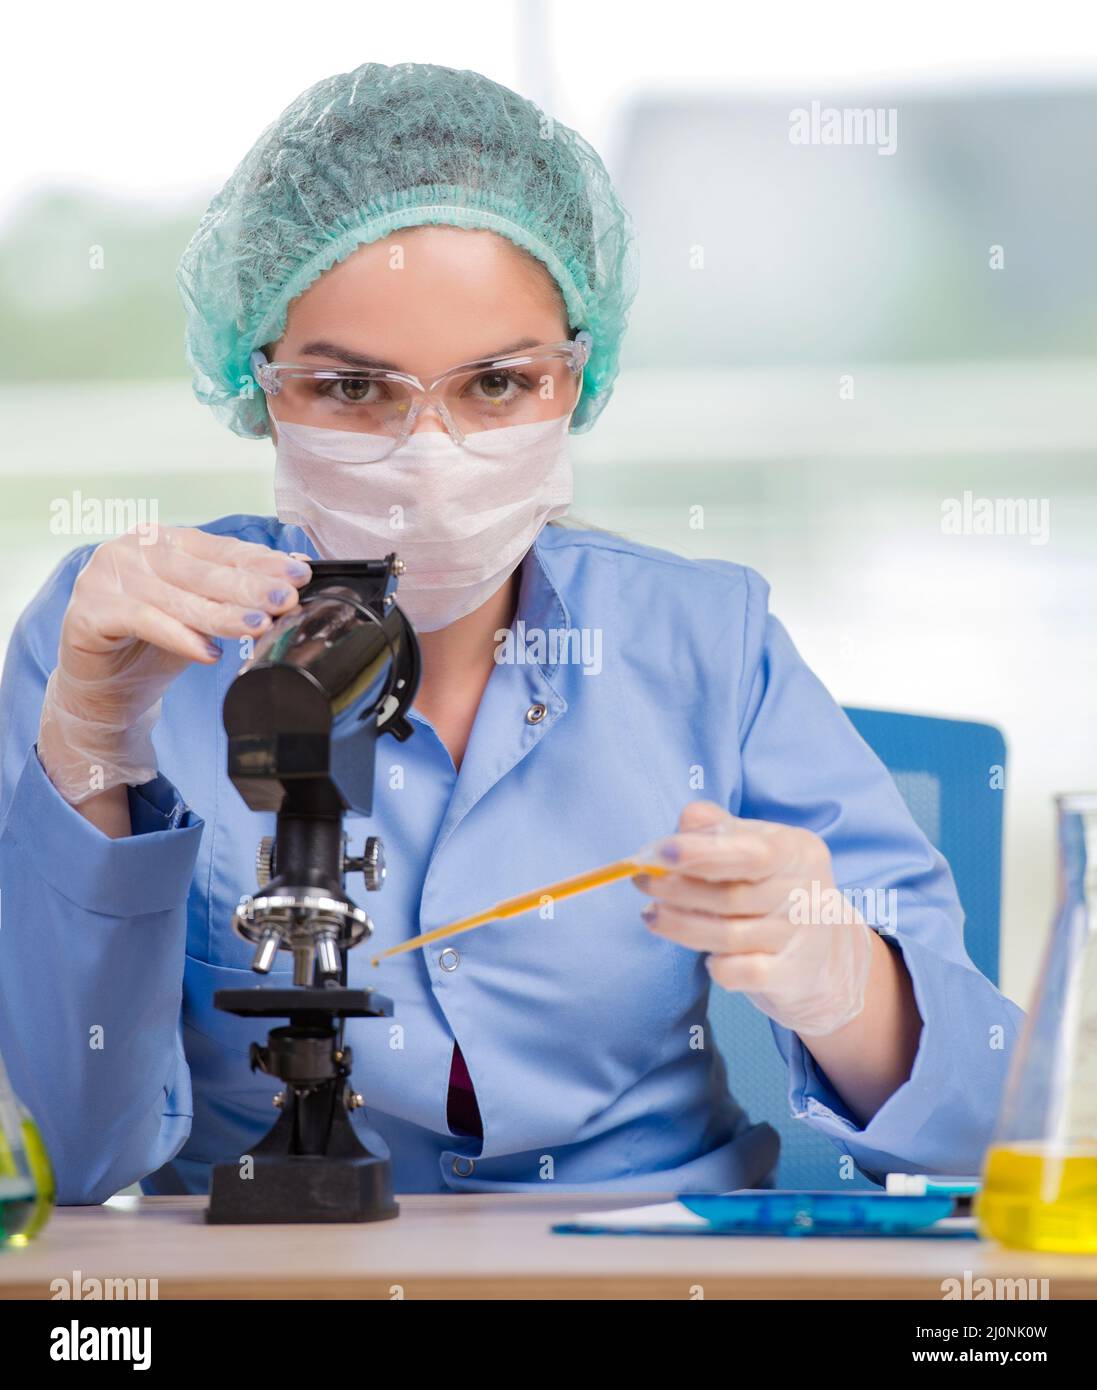 Mujer trabajando en el laboratorio químico Foto de stock